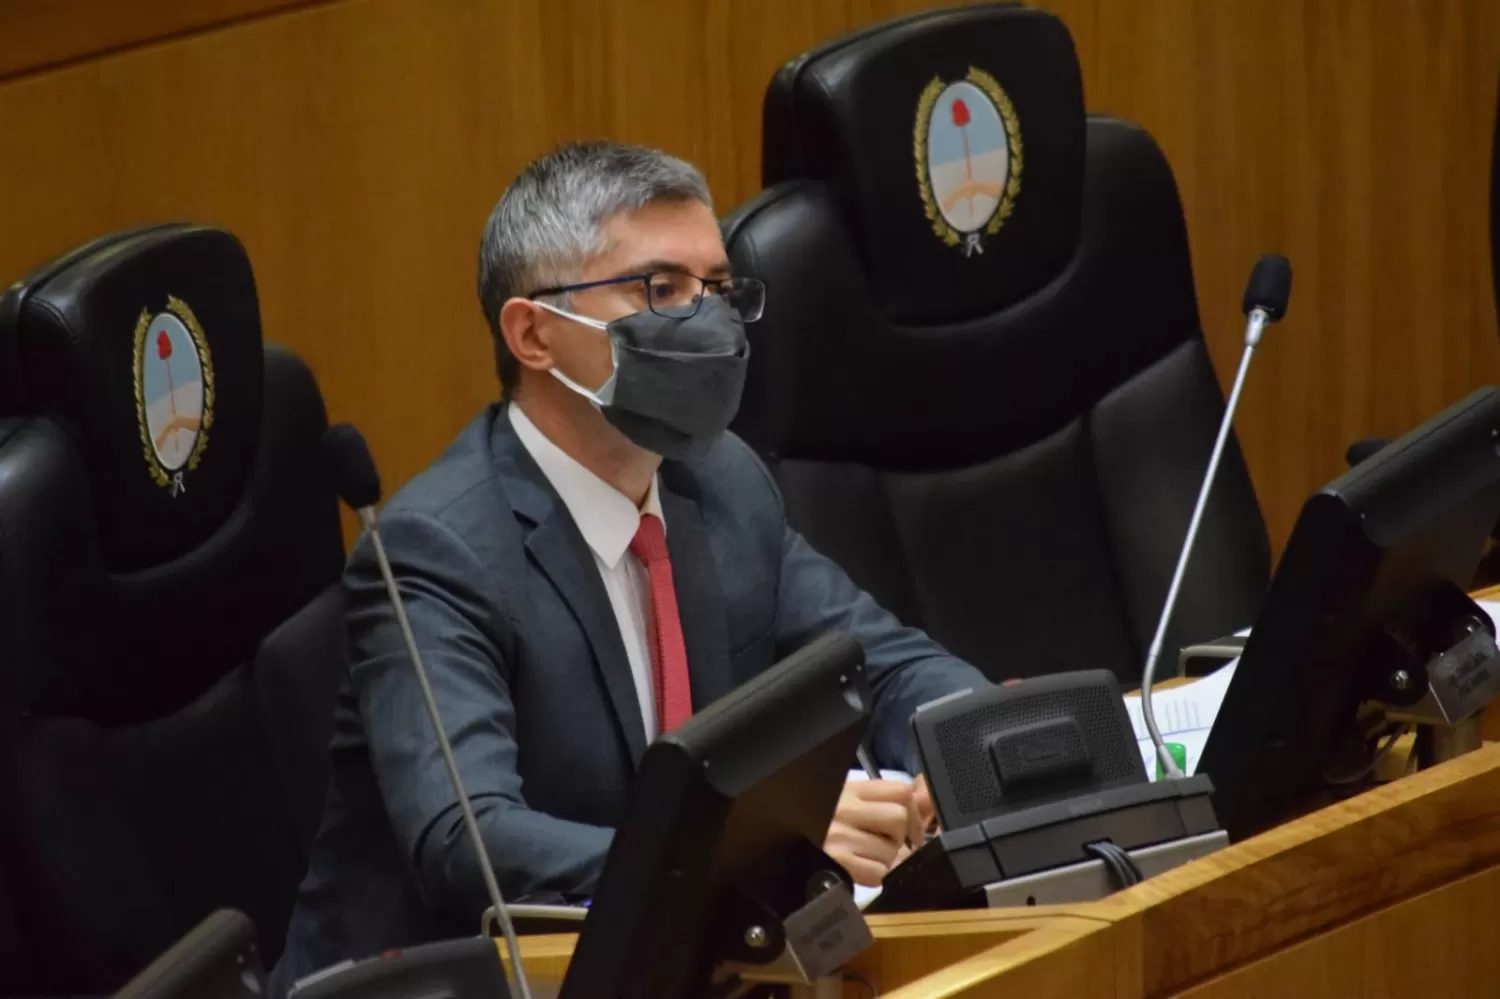 Caso Lichtmajer: El ministro debería pedir disculpas y, luego, renunciar